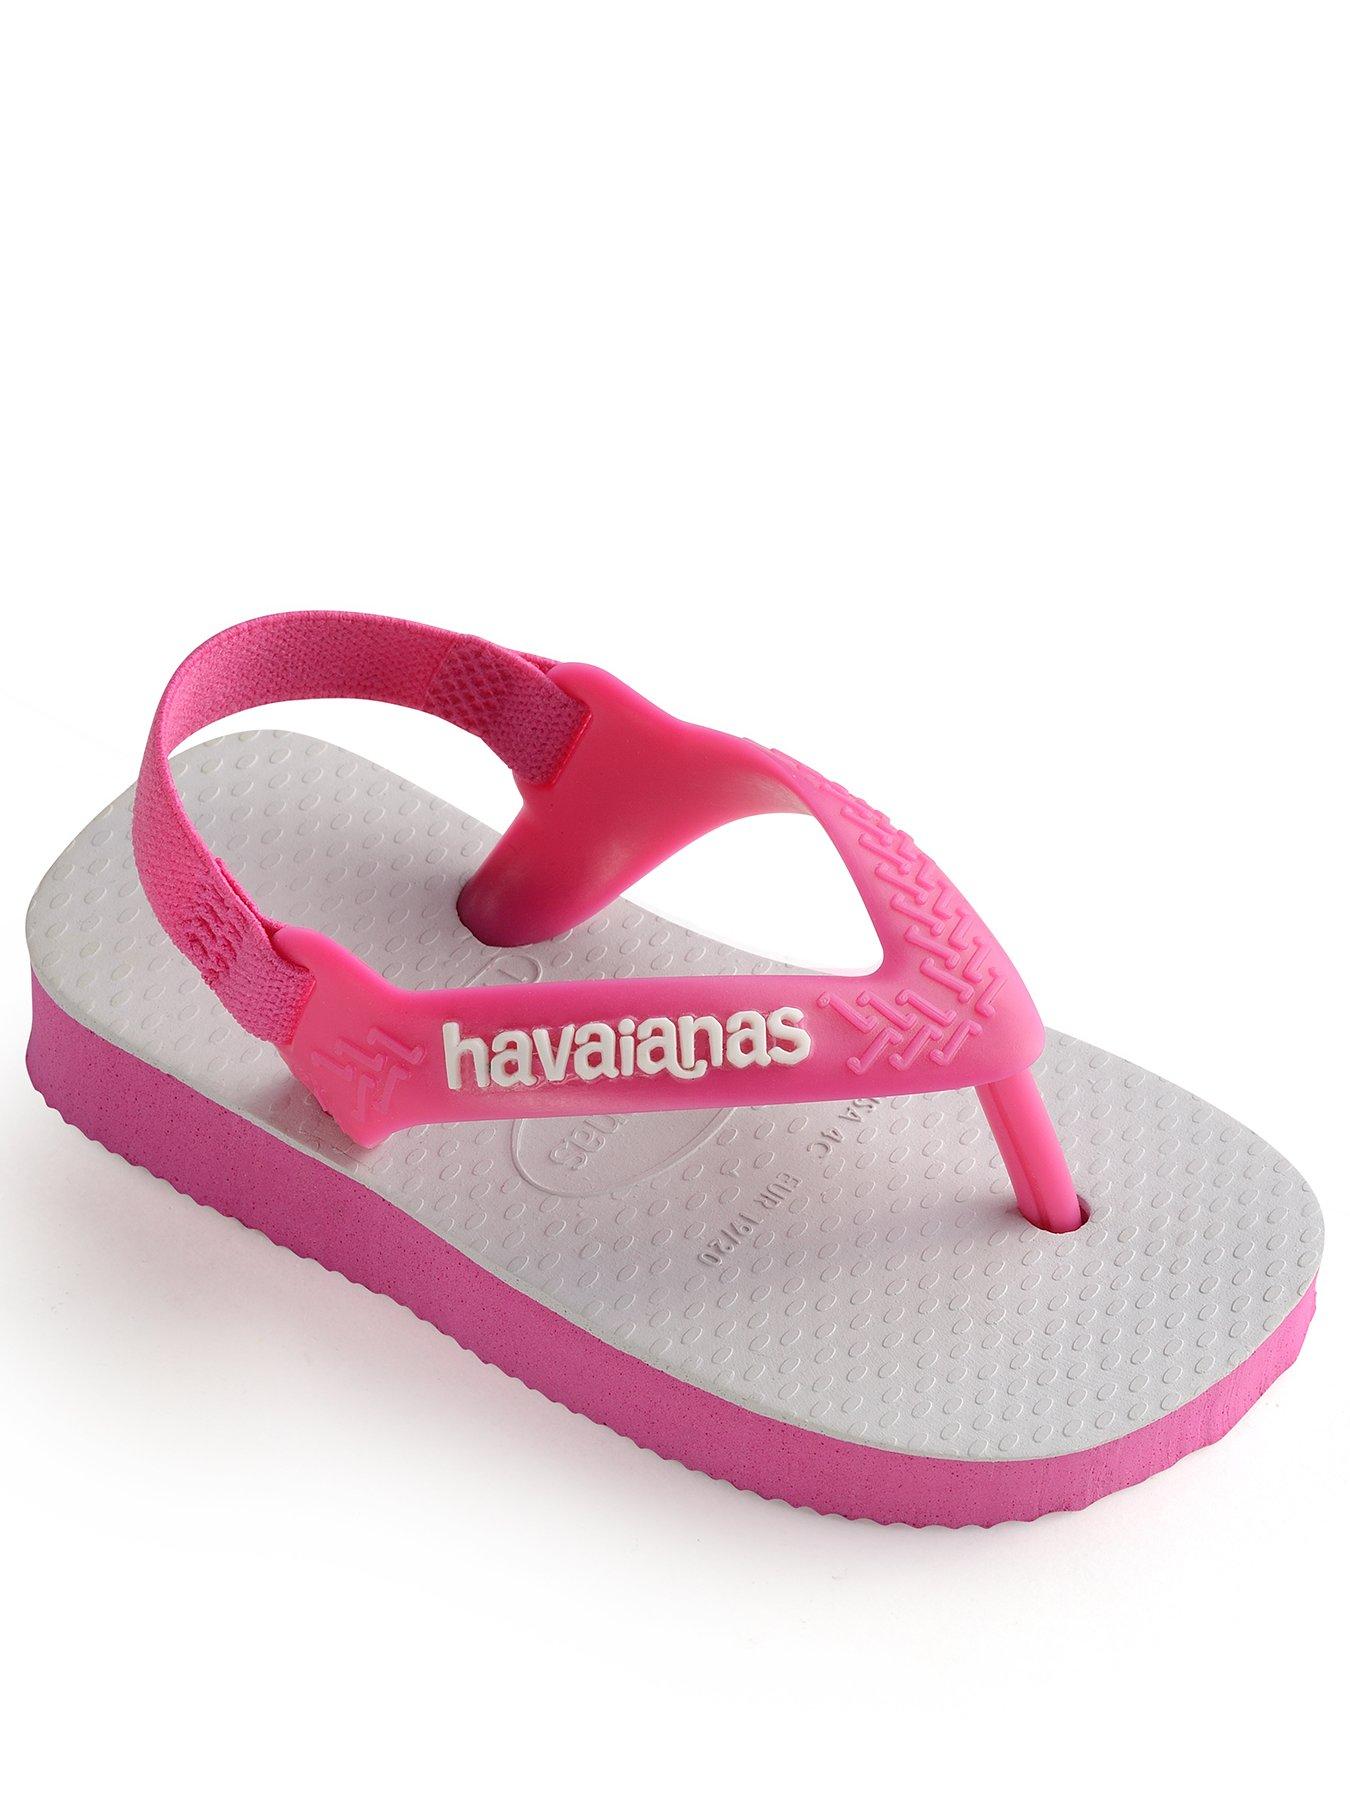 baby girl flip flop sandals